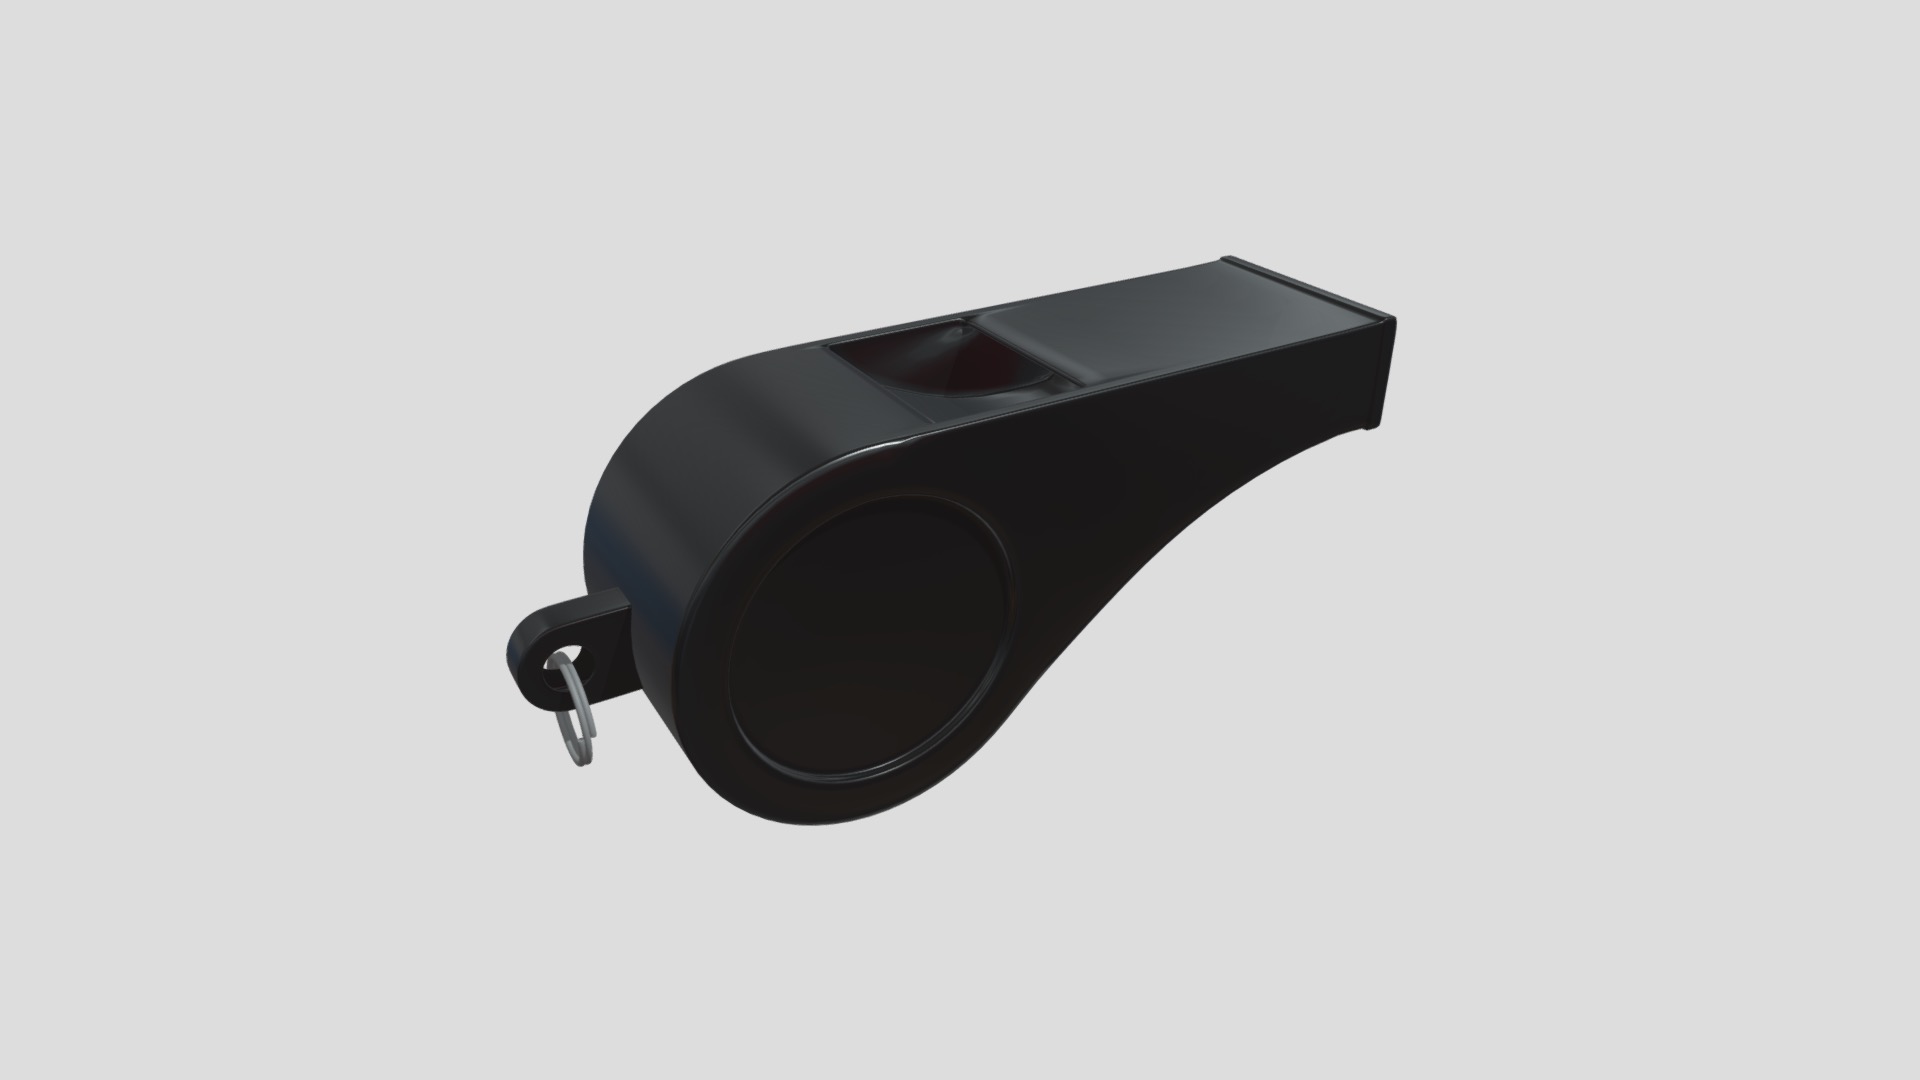 3D model Whistle